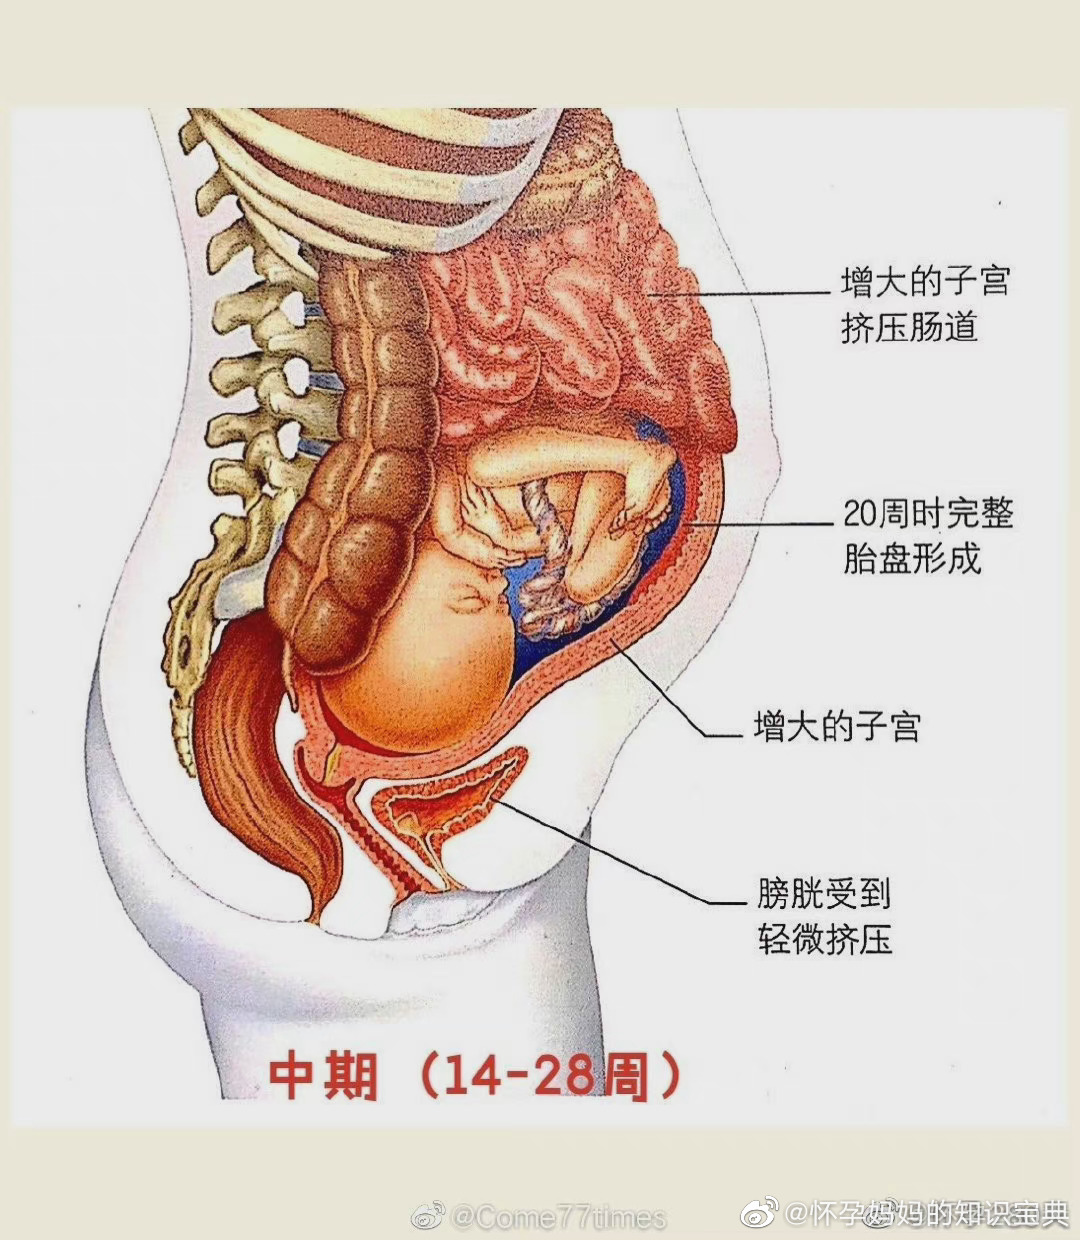 怀孕后肚子内部变化图图片